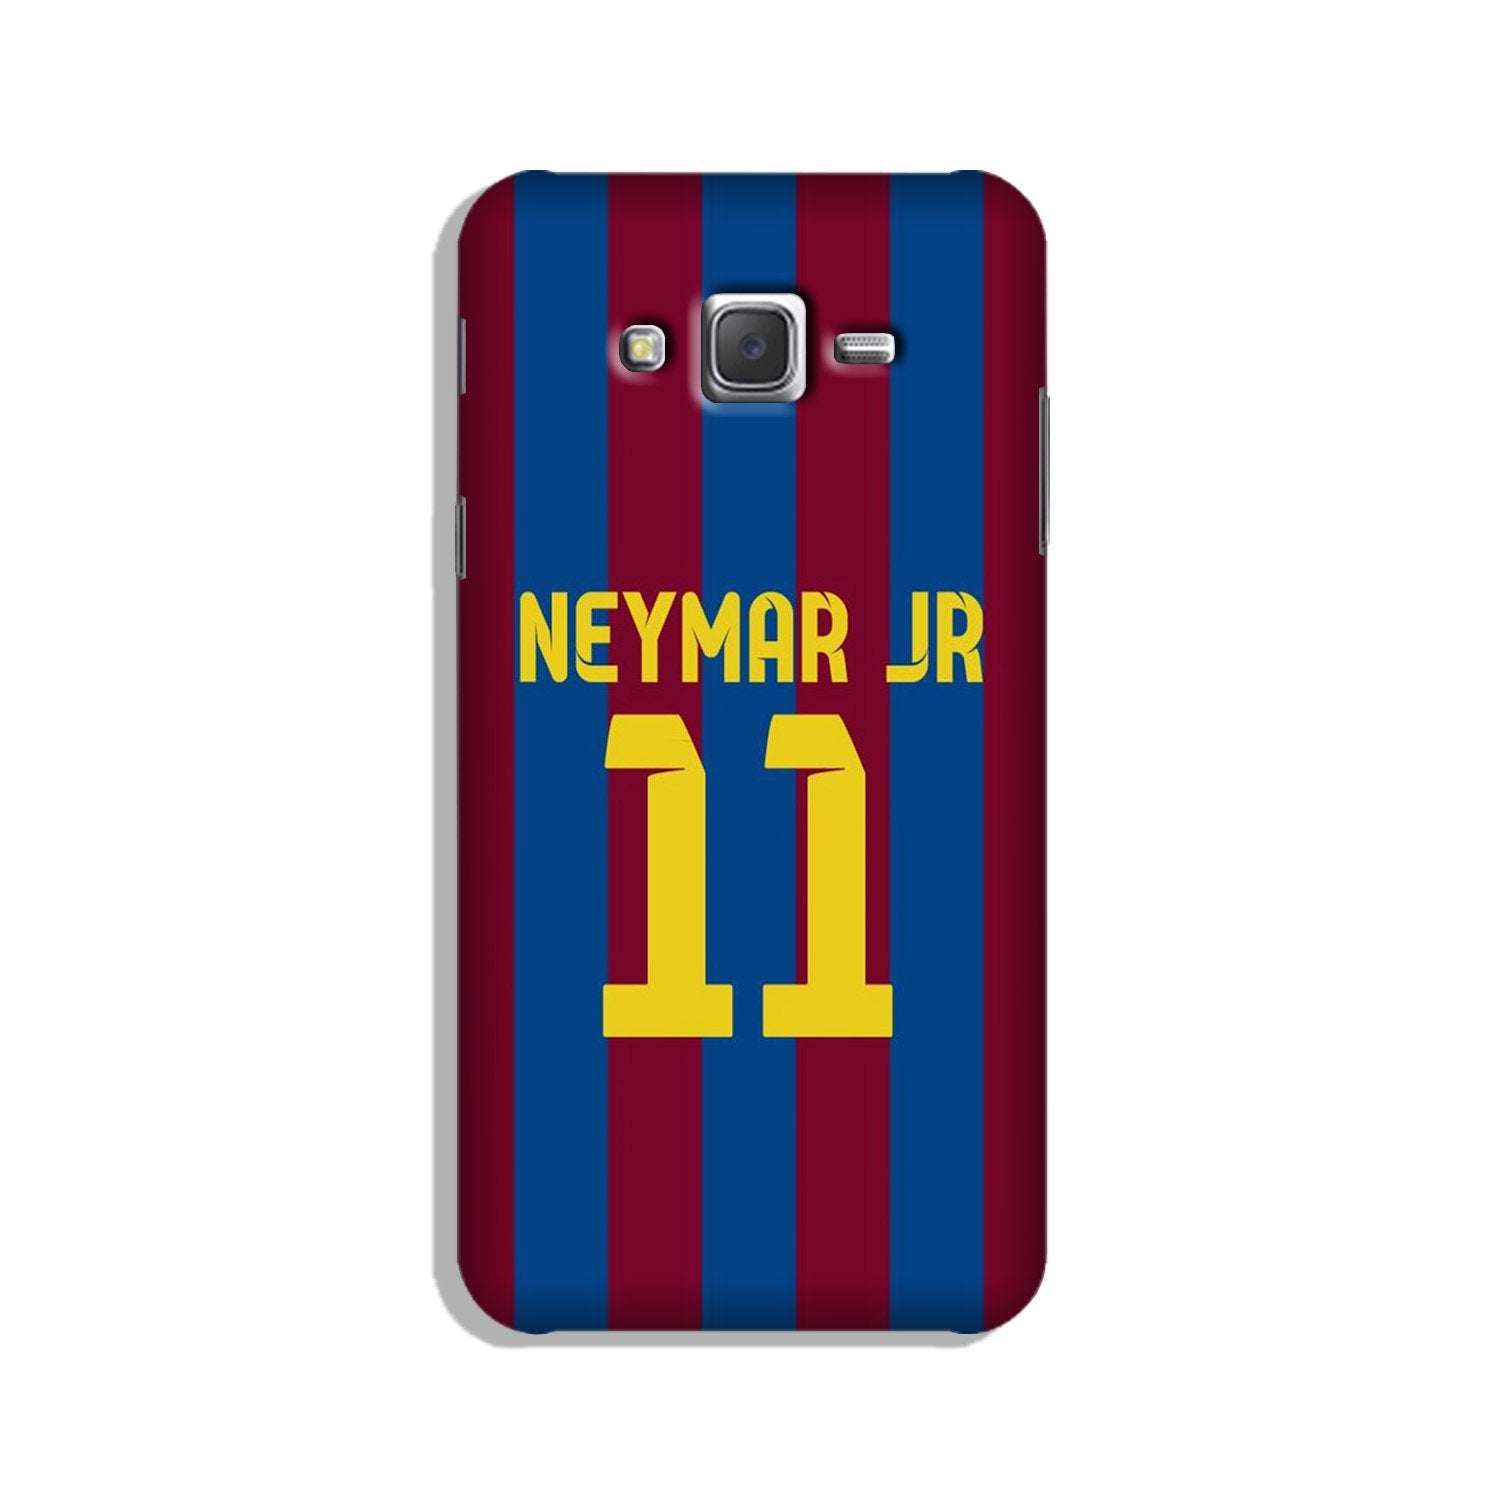 Neymar Jr Case for Galaxy J5 (2015)(Design - 162)